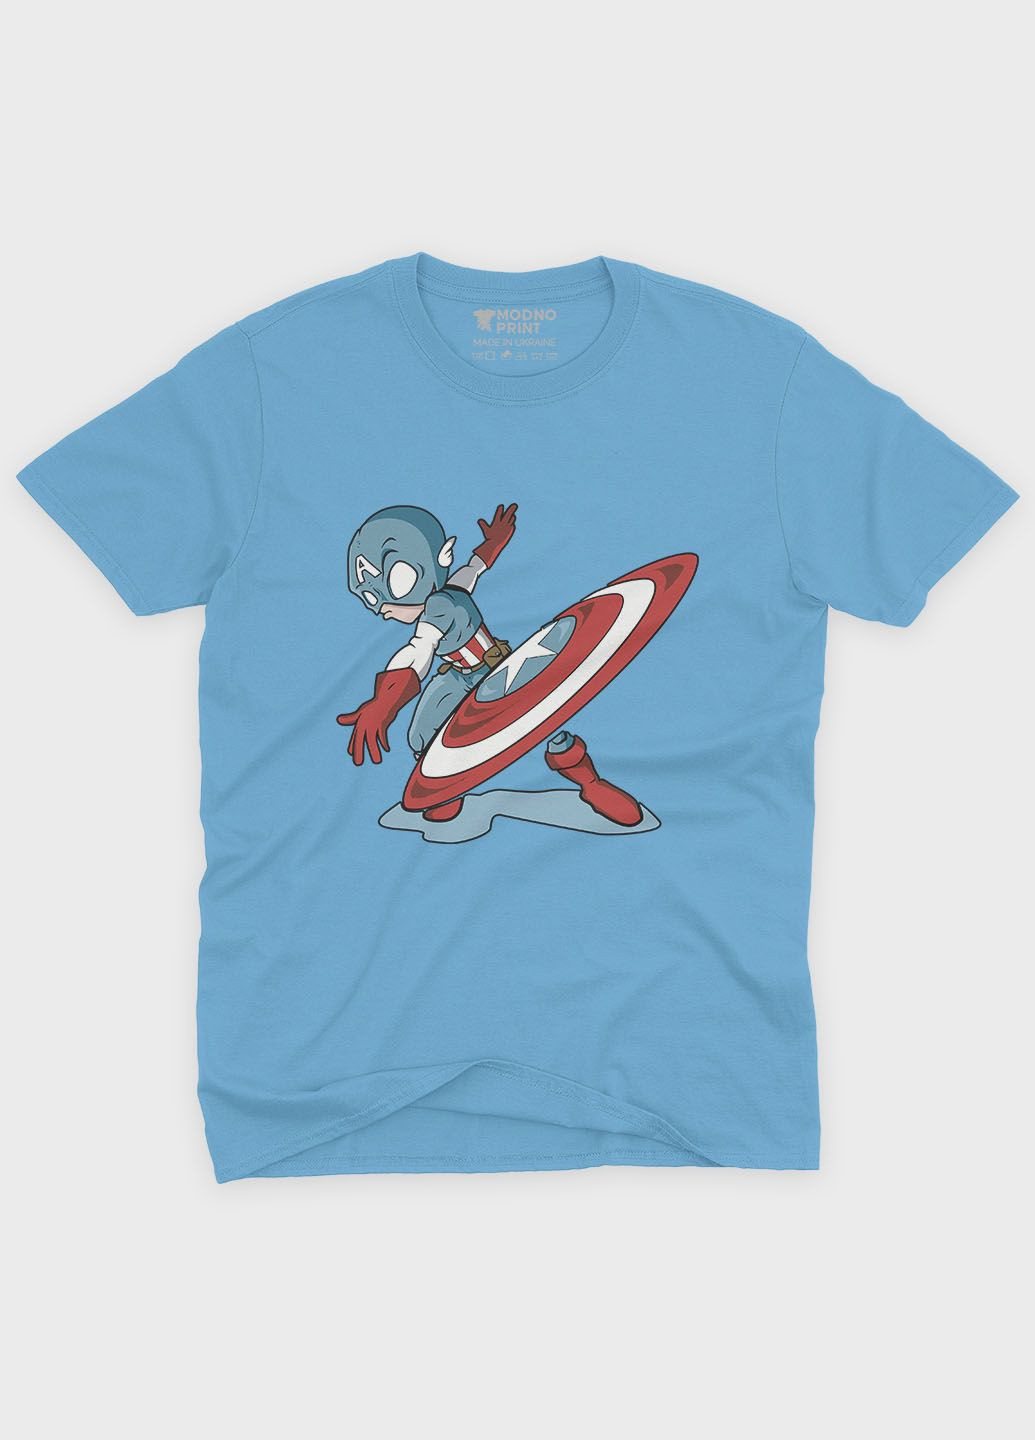 Голубая демисезонная футболка для девочки с принтом супергероя - капитан америка (ts001-1-lbl-006-022-011-g) Modno